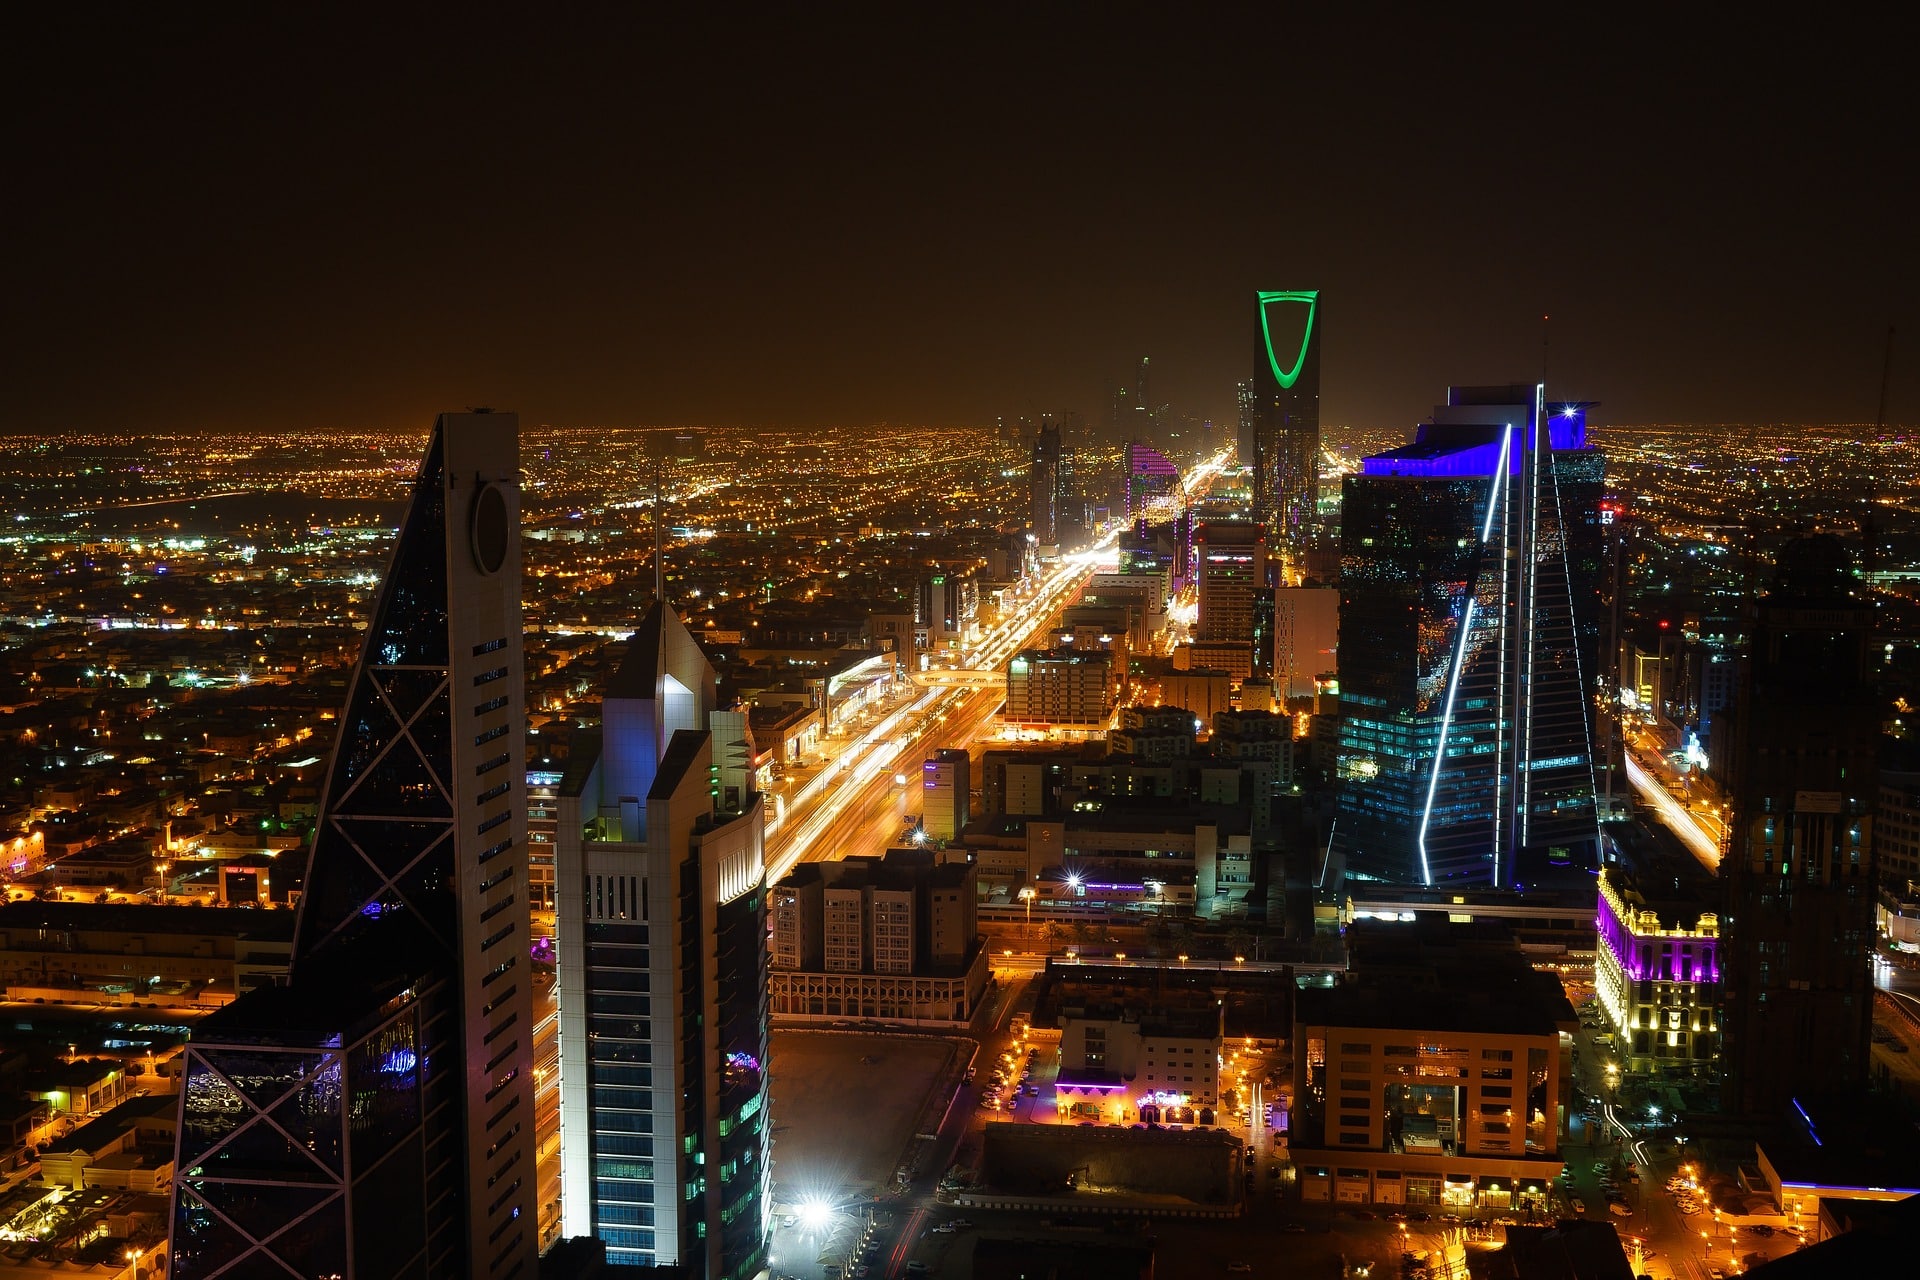 Die Skyline von Riad wird sich mit dem Würfelkomplex Mukaab verändern. Bildquelle: Pixabay